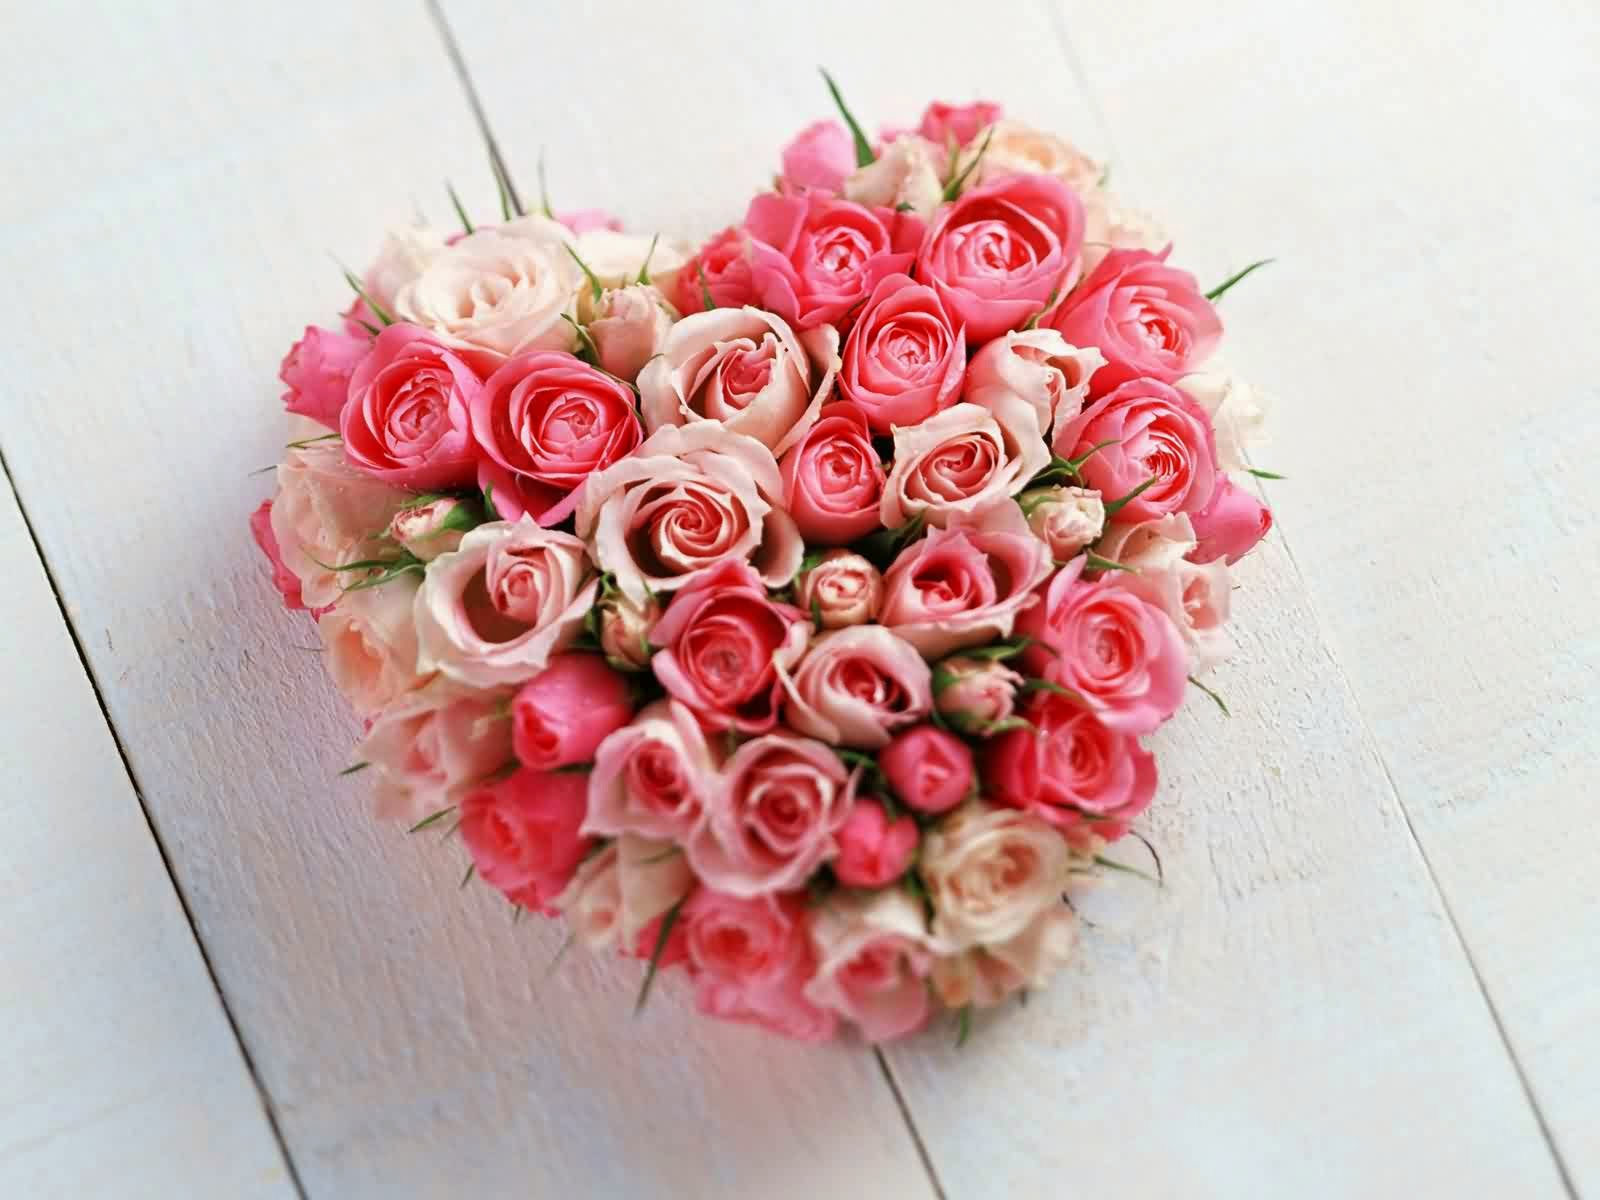 http://3.bp.blogspot.com/-Rx_mZUUhY6A/TzgMBJdtibI/AAAAAAAAFO4/-43b_djkl9o/s1600/bouquet-de-roses-saint-valentin.jpg